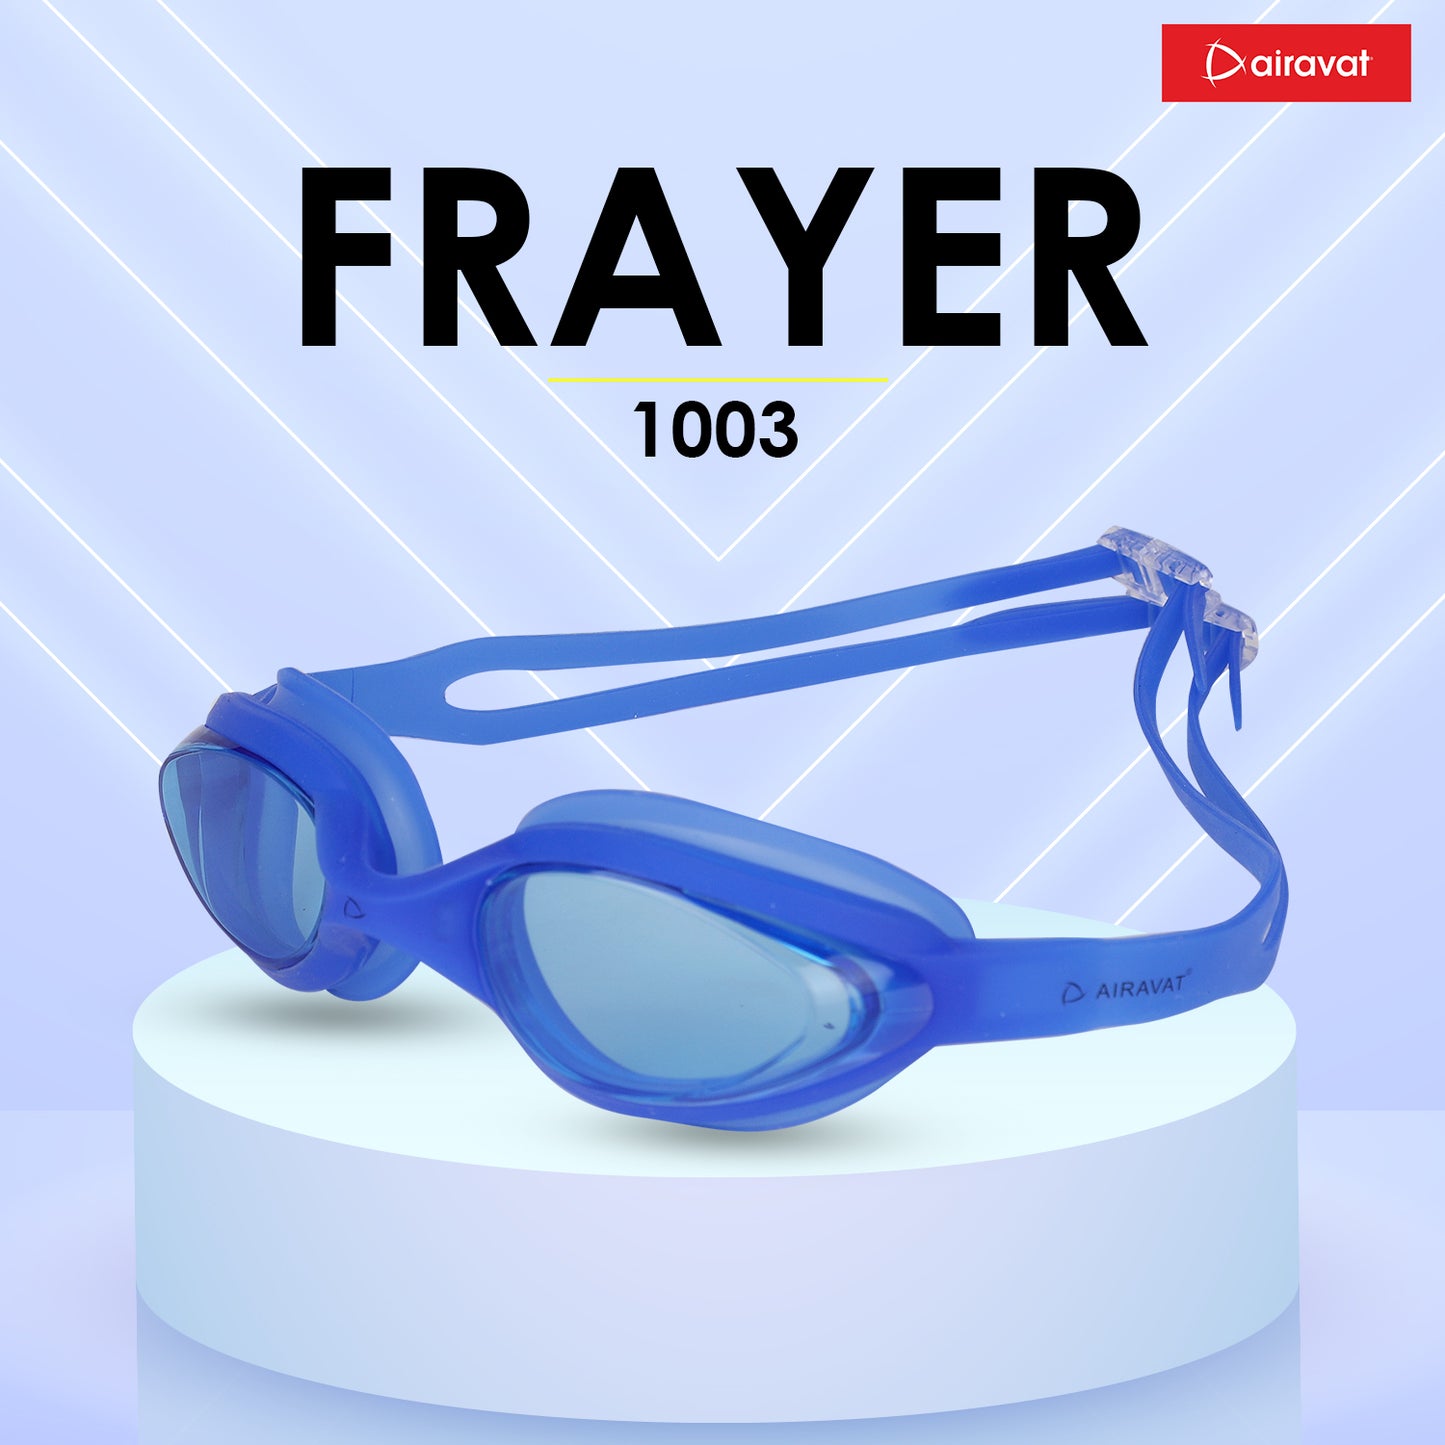 FRAYER 1003